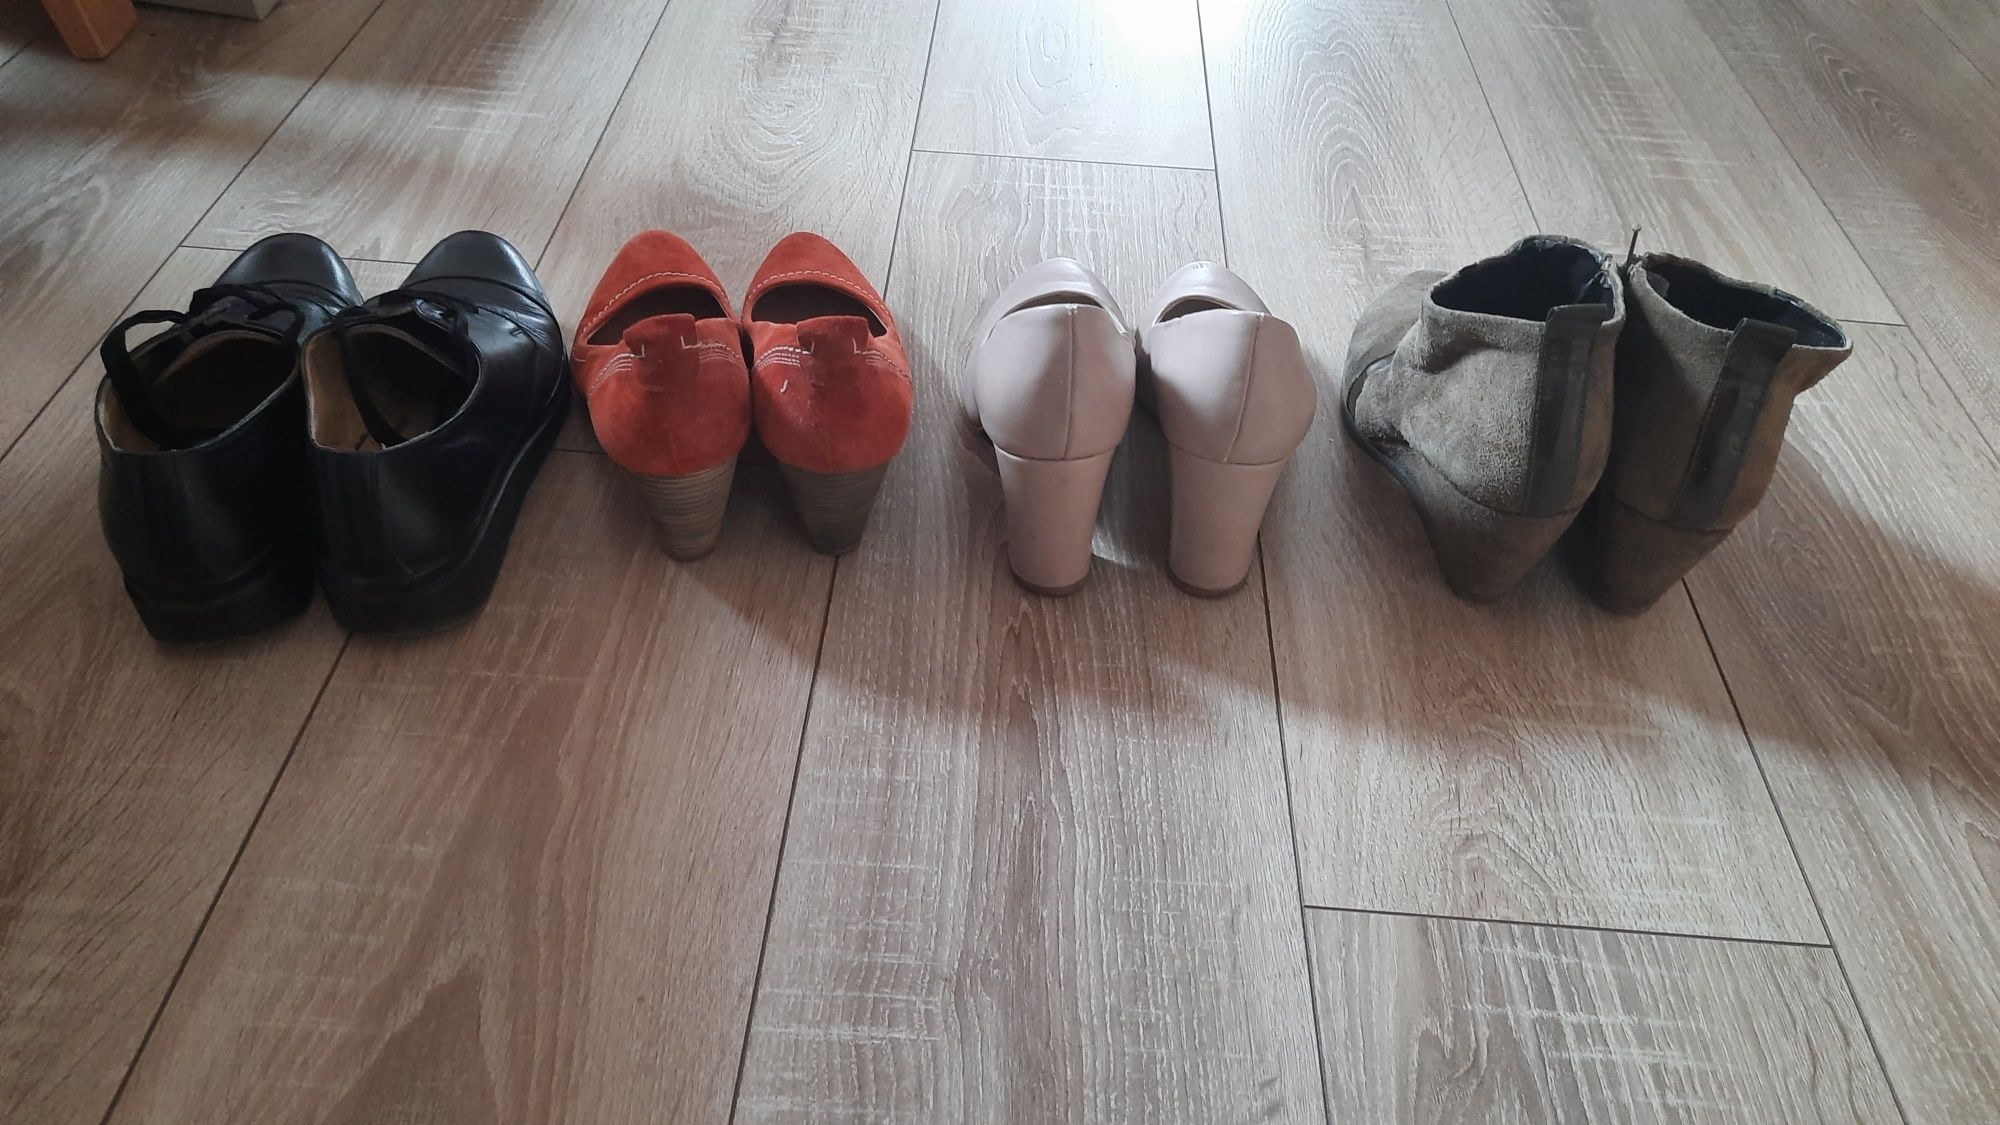 Pantofi dama piele Ara, Jenny, Benvenuti, mărimi 37,38, trimit oriunde